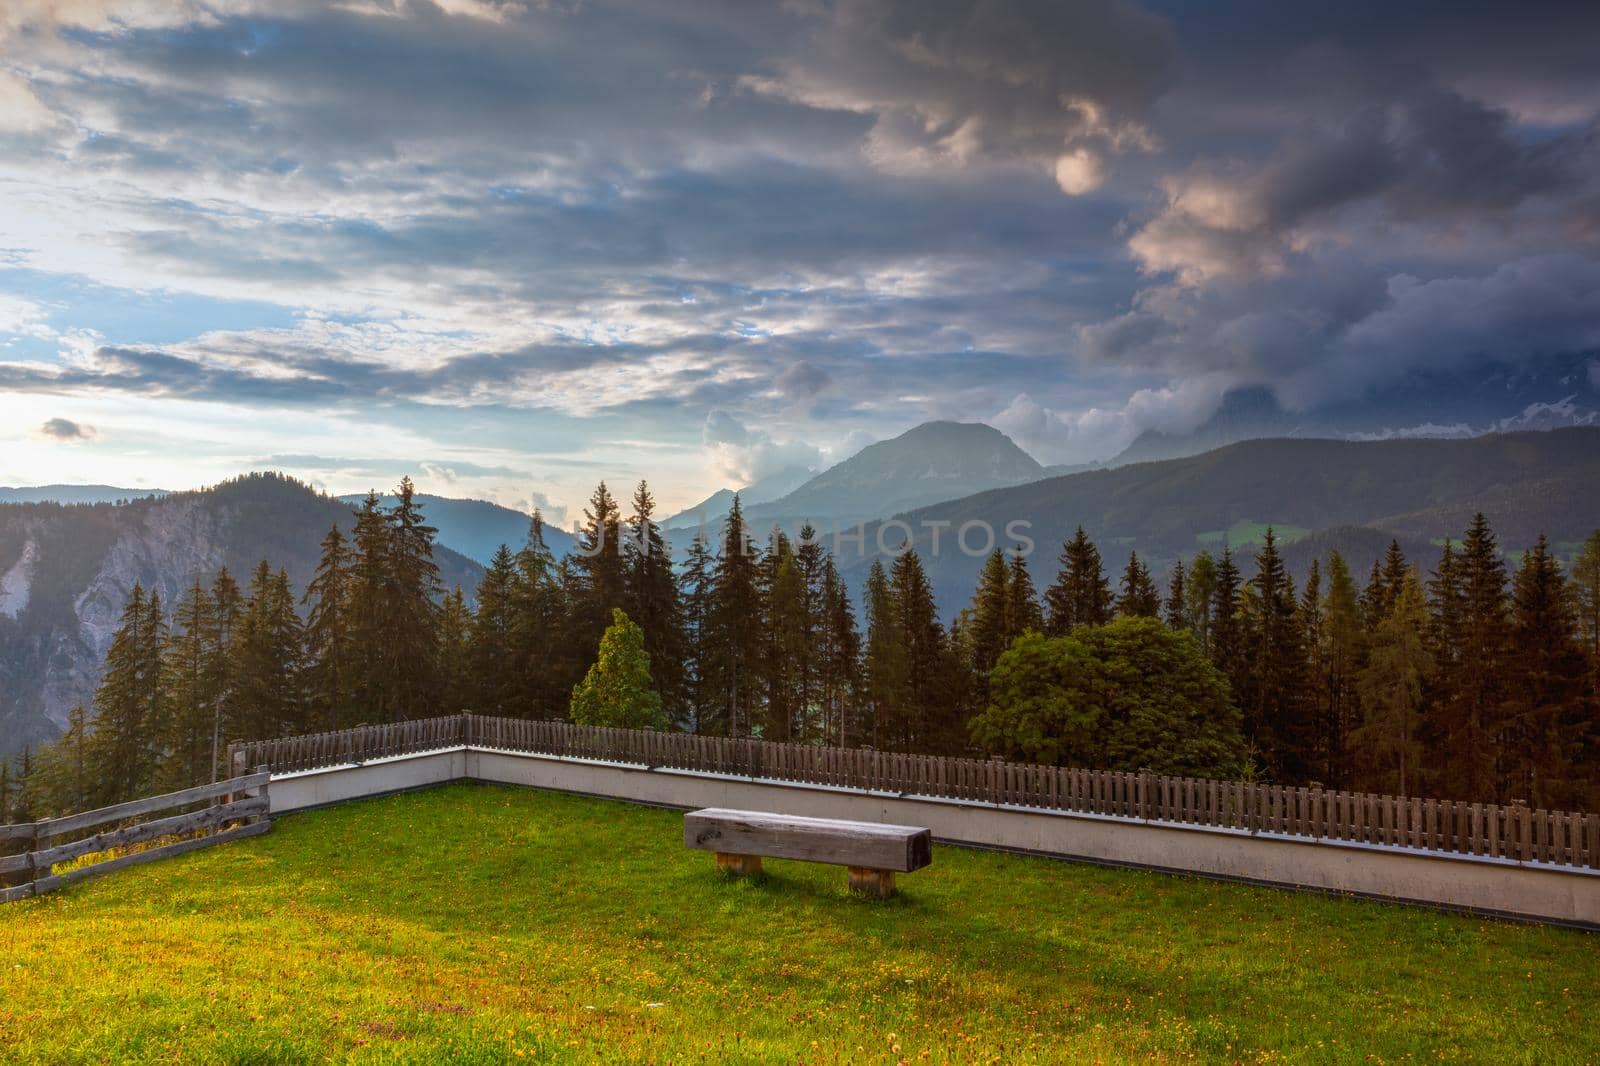 Dachstein mountain and summer valley views from Almwelt Austria resort.   by CaptureLight